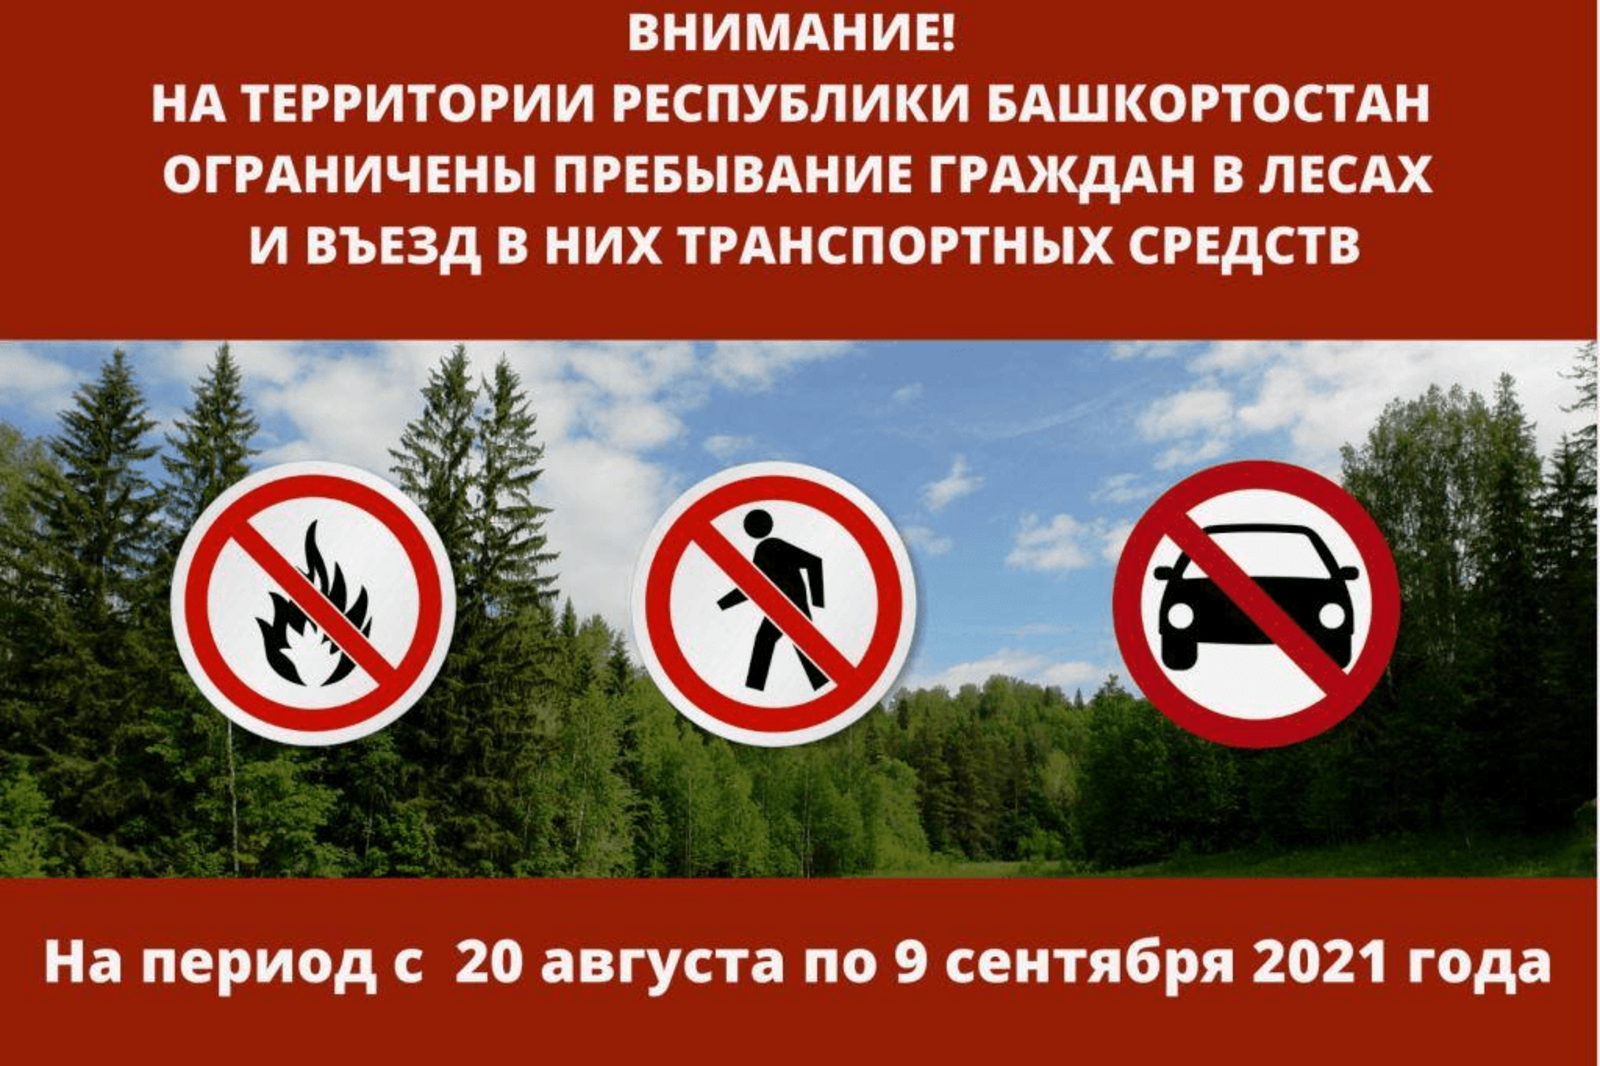 Пребывание граждан в лесах и въезд в них транспортных средств ограничены с 20 августа по 9 сентября 2021 года